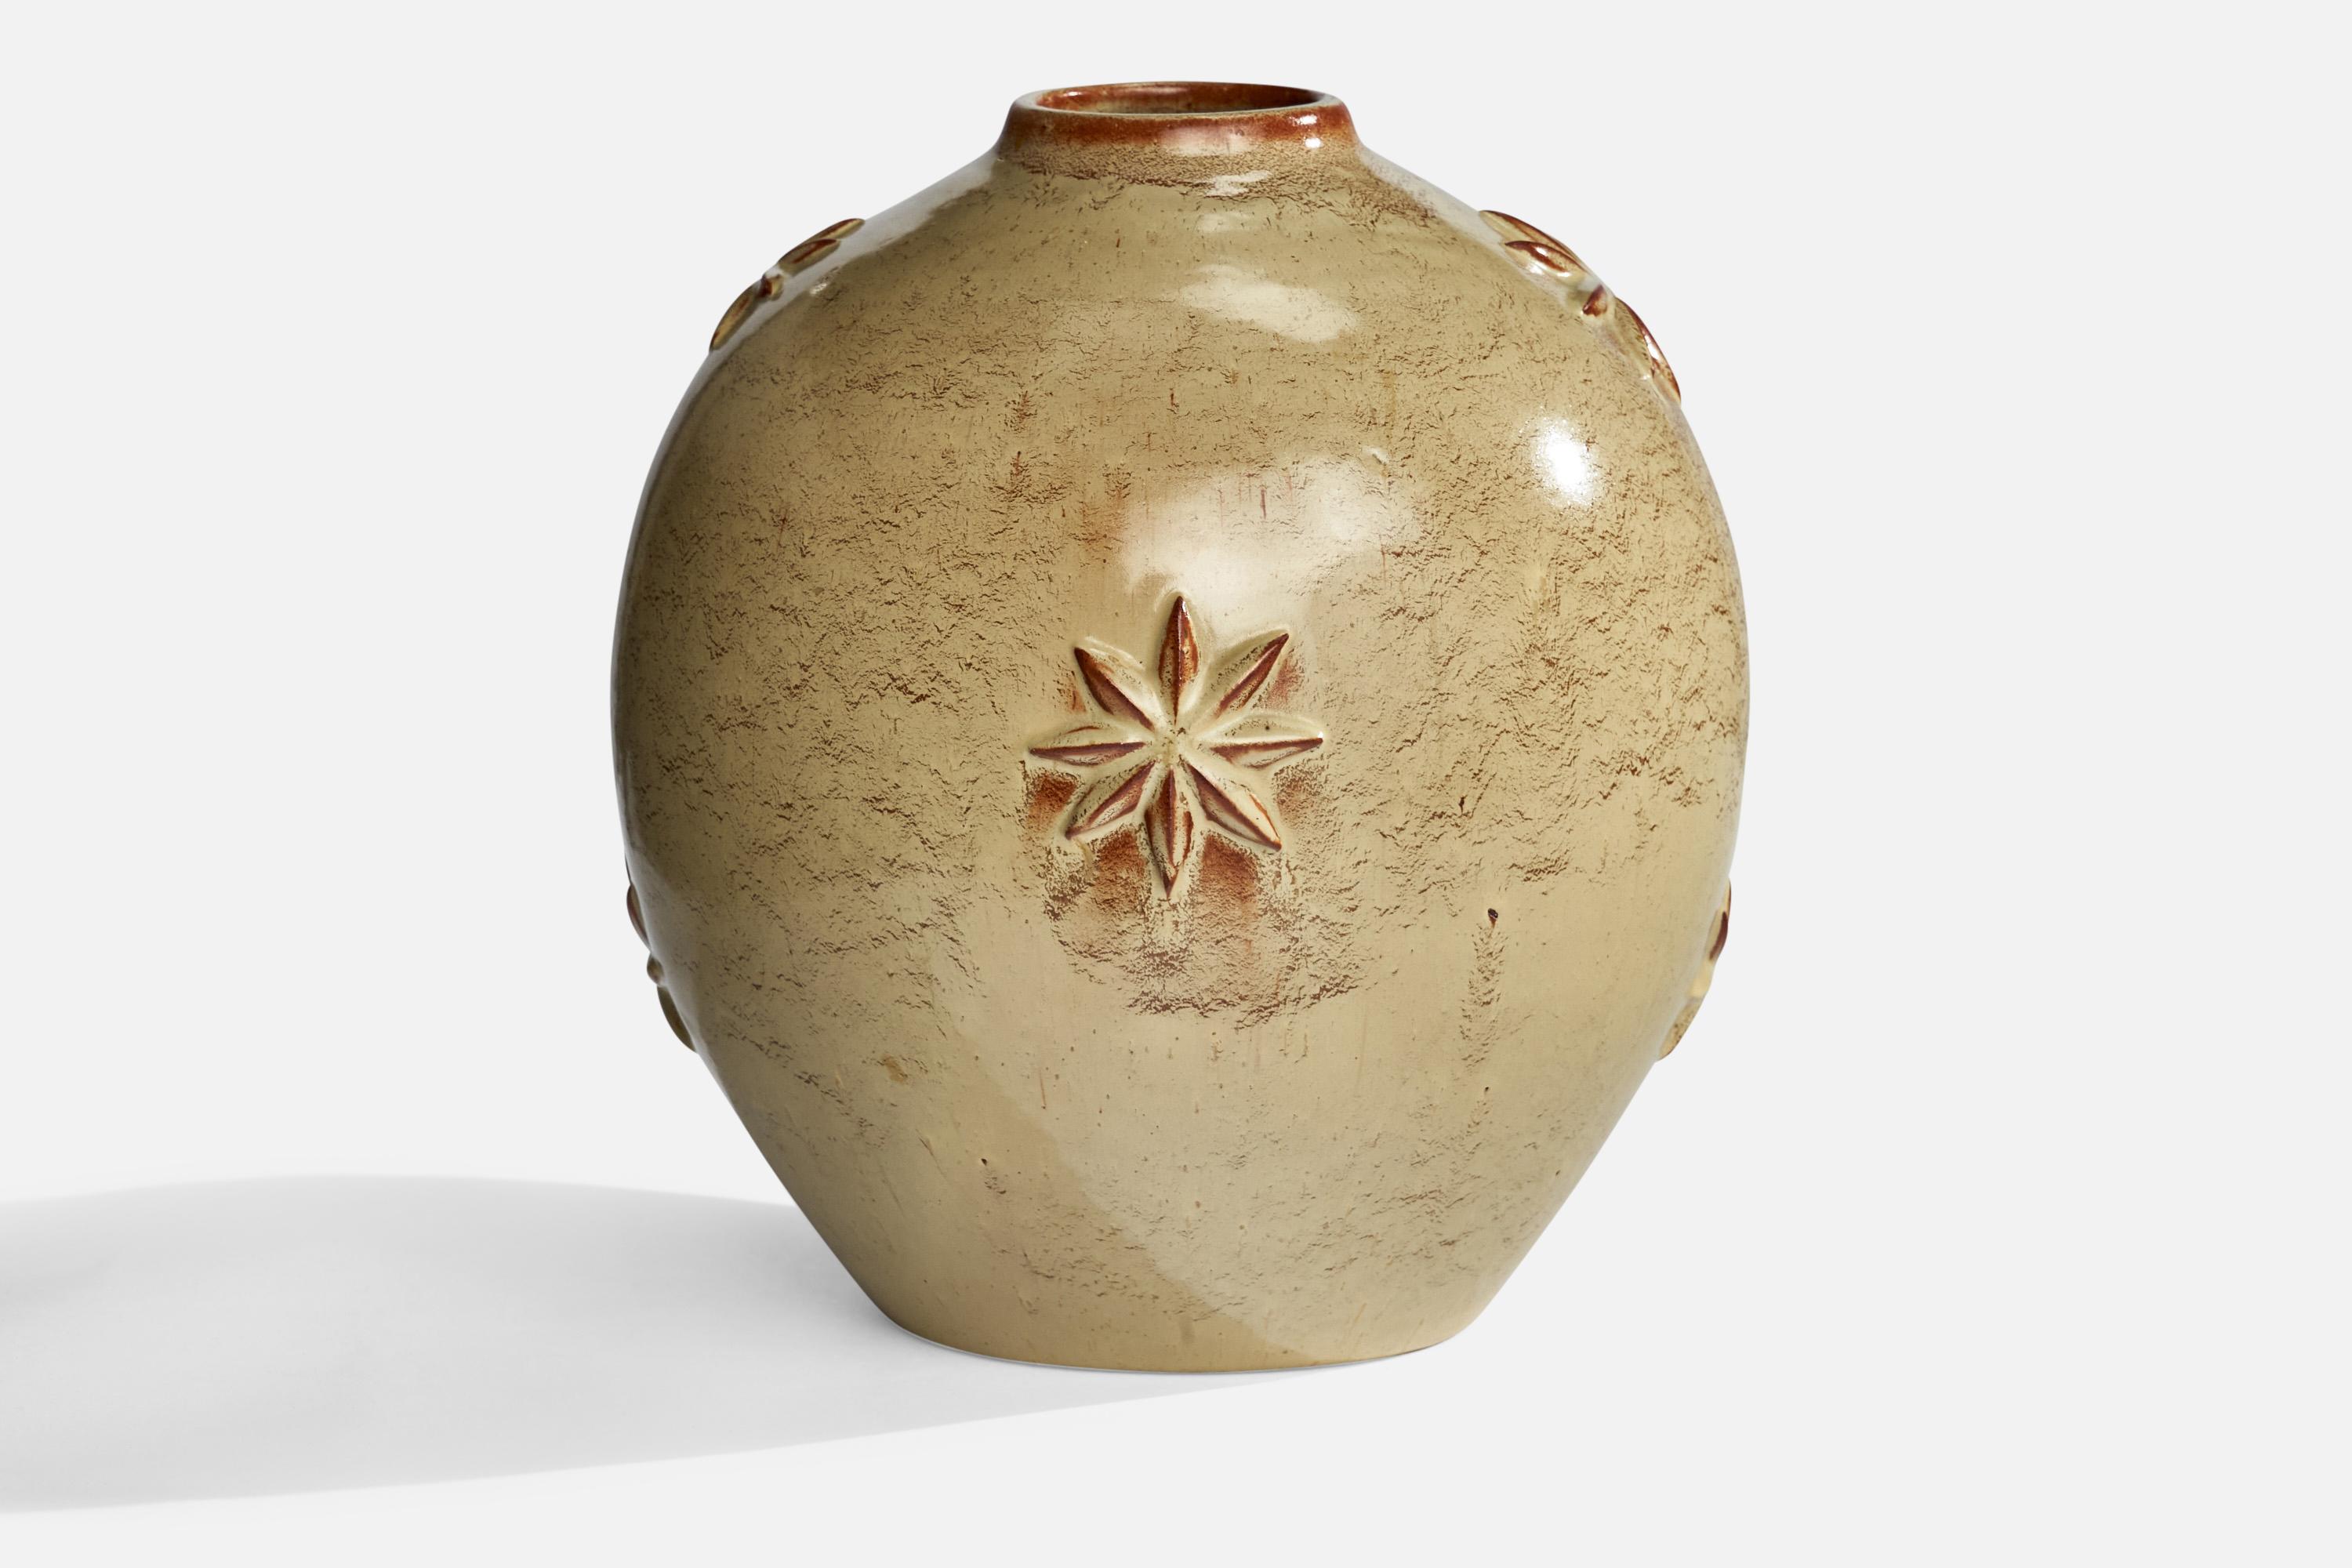 A beige-glazed ceramic vase designed by Jerk Werkmäster and produced by Nittsjö, Sweden, c. 1930s.